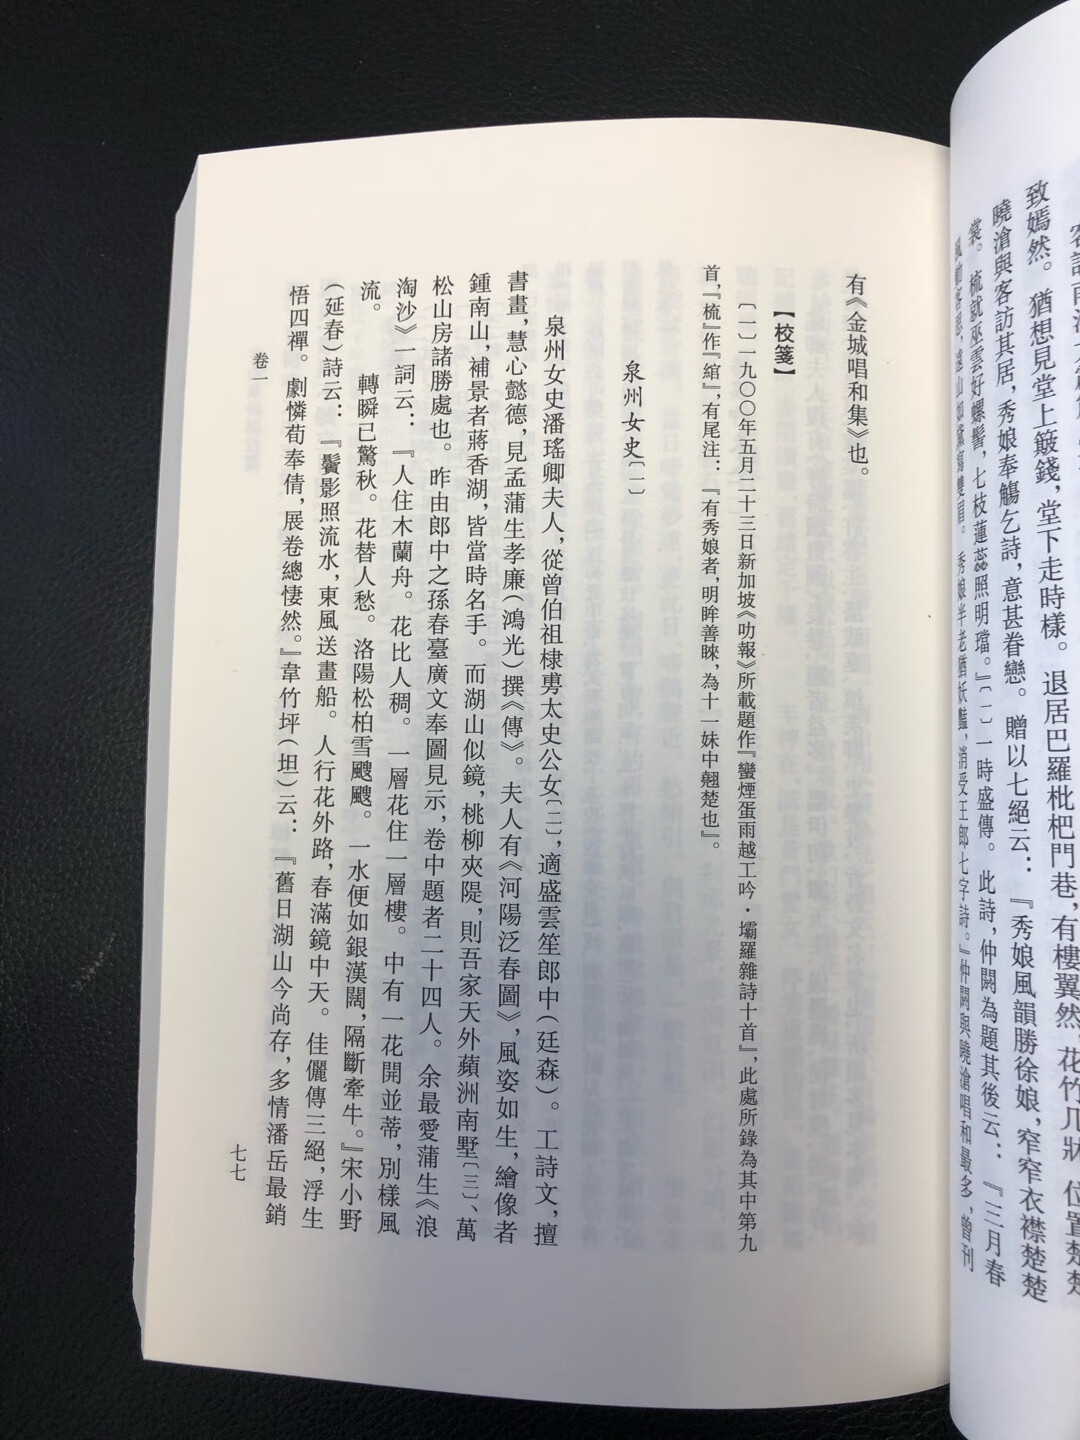 人民文学出版社这套中国古典文学理论批评专著选辑，印刷质量不亚于中华书局的平装本，就是字稍微小了点。不知点校水平如何？